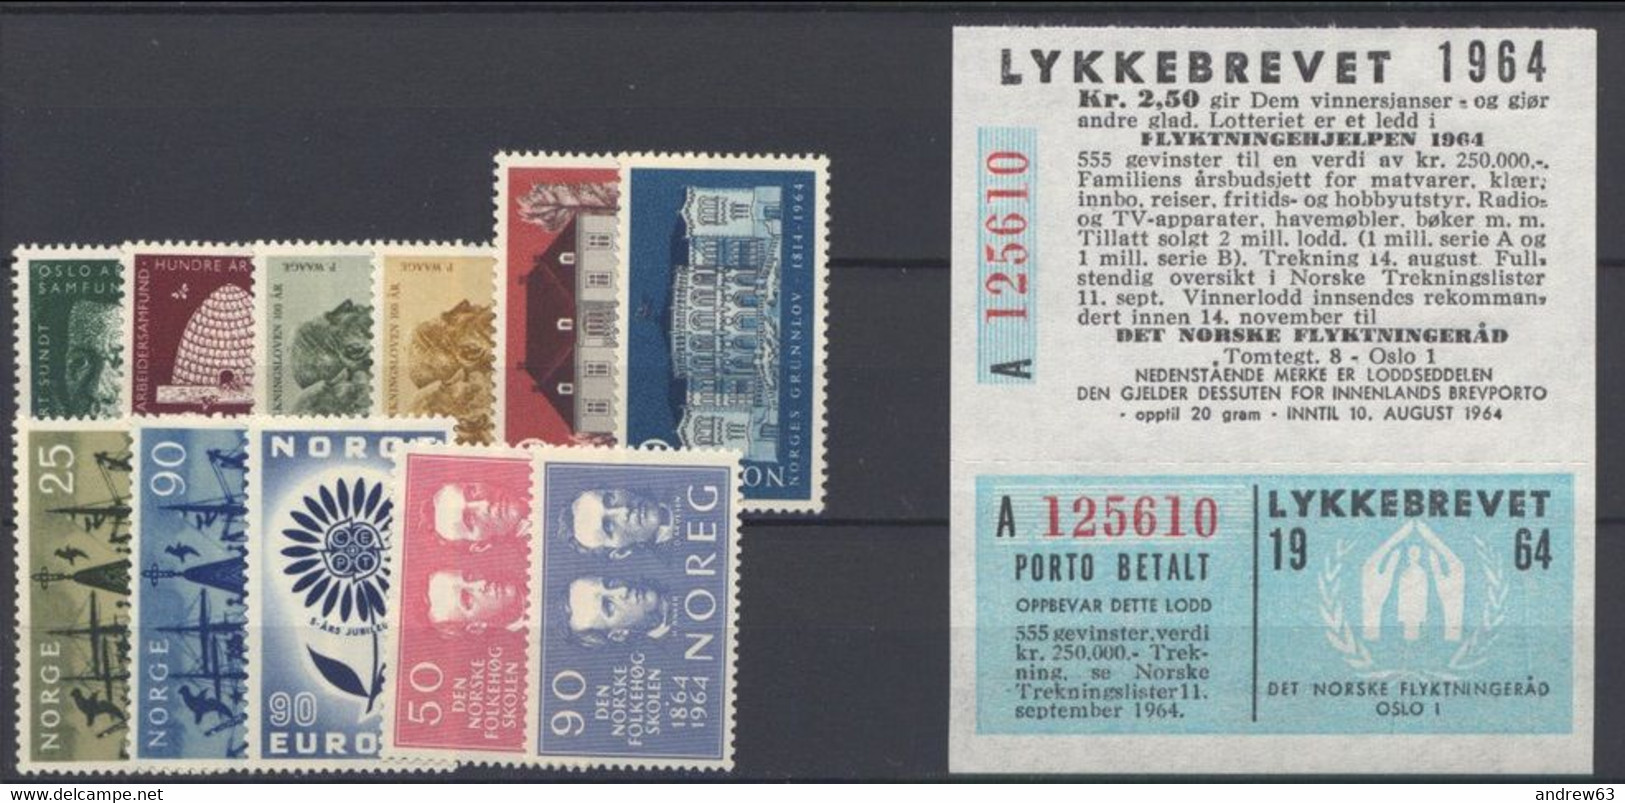 NORVEGIA - Norge - Norwegen - Norway - 1964 With Lykkebrevet - Annata Completa / Complete Year **/MNH VF - New - Ganze Jahrgänge